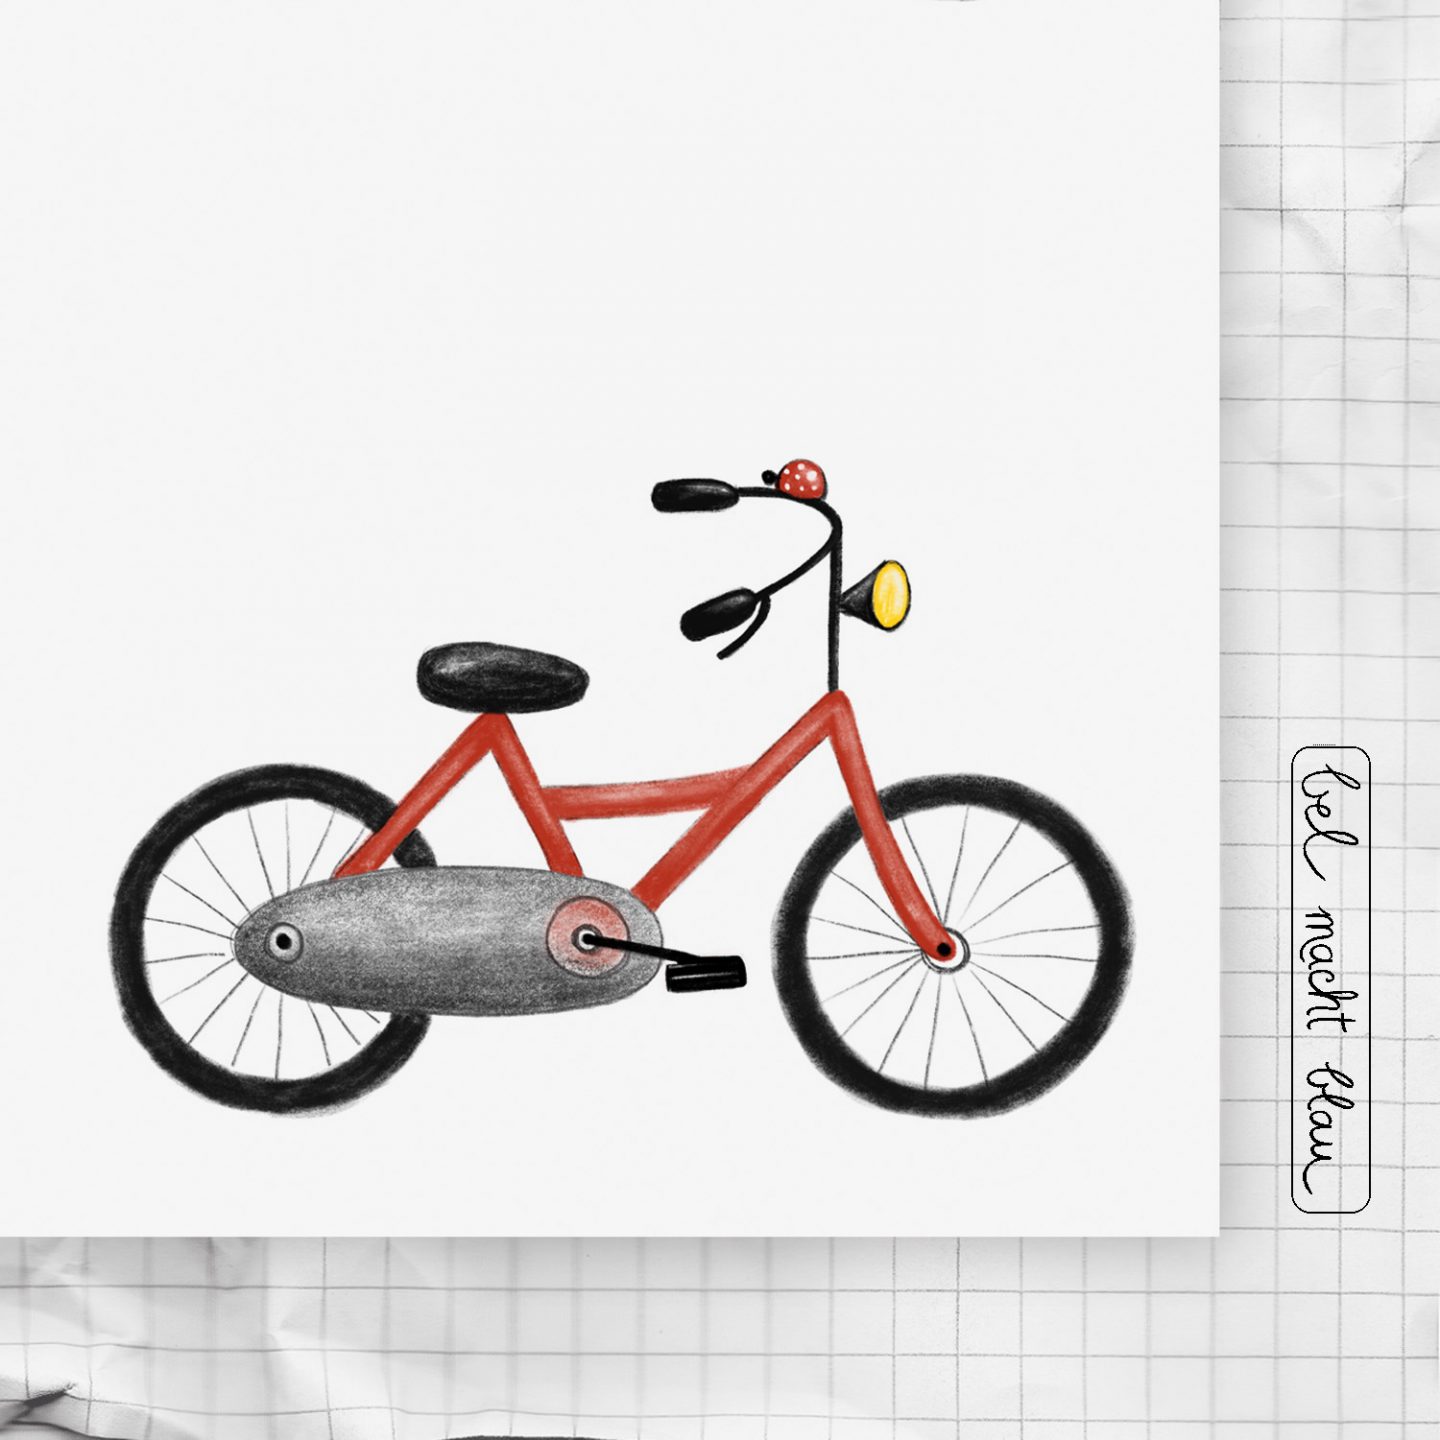 Zeichenkartei Nr. 12: ein Fahrrad zeichnen - "Kleine Künstler - kleine Schritte" ...die Zeichen-Kartei für Kinder!